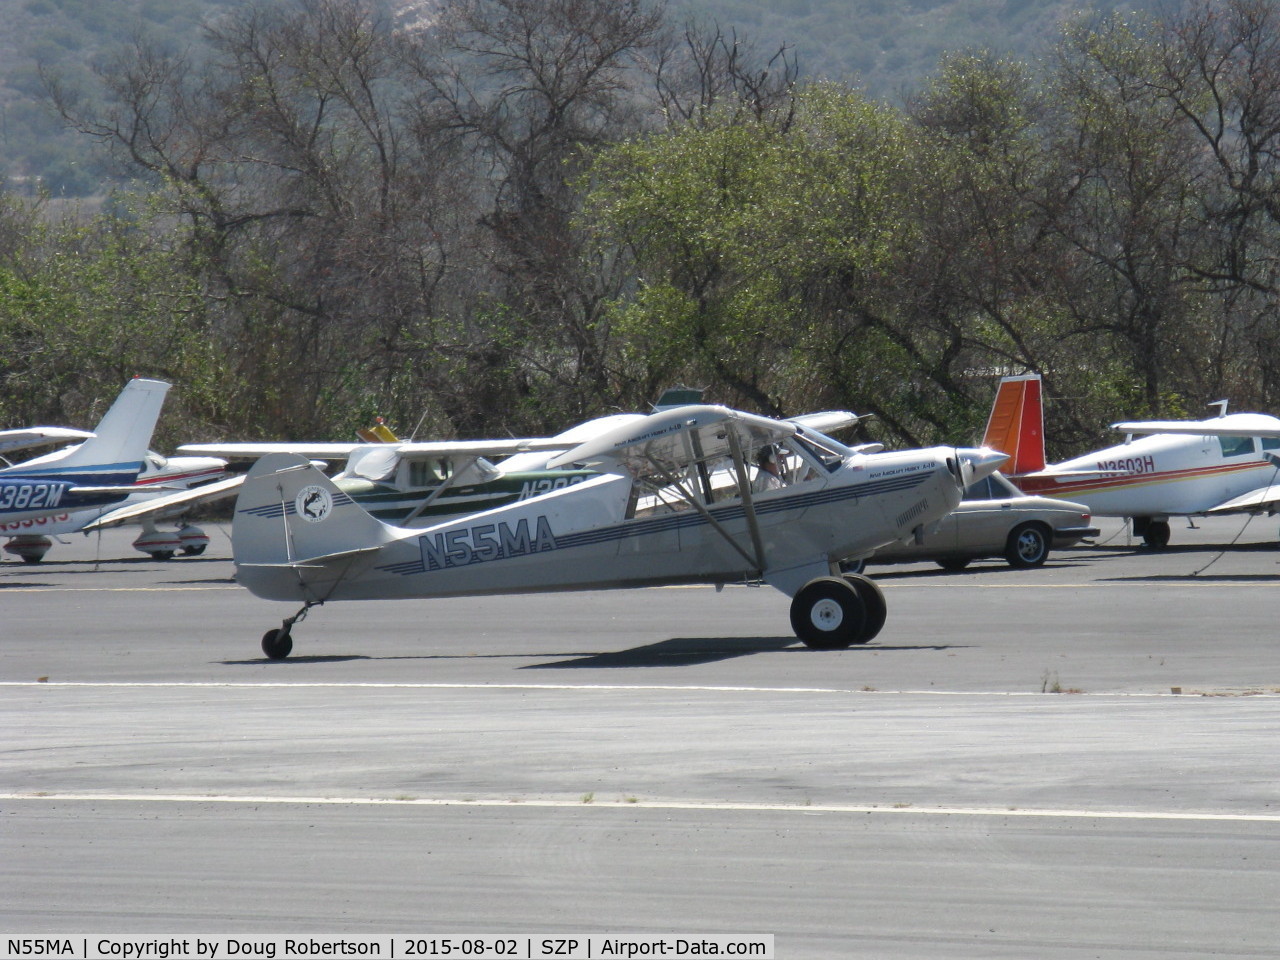 N55MA, 2005 Aviat A-1B Husky C/N 2316, 2005 Aviat A-1B HUSKY, Lycoming O-360 180 Hp, landing roll Rwy 22